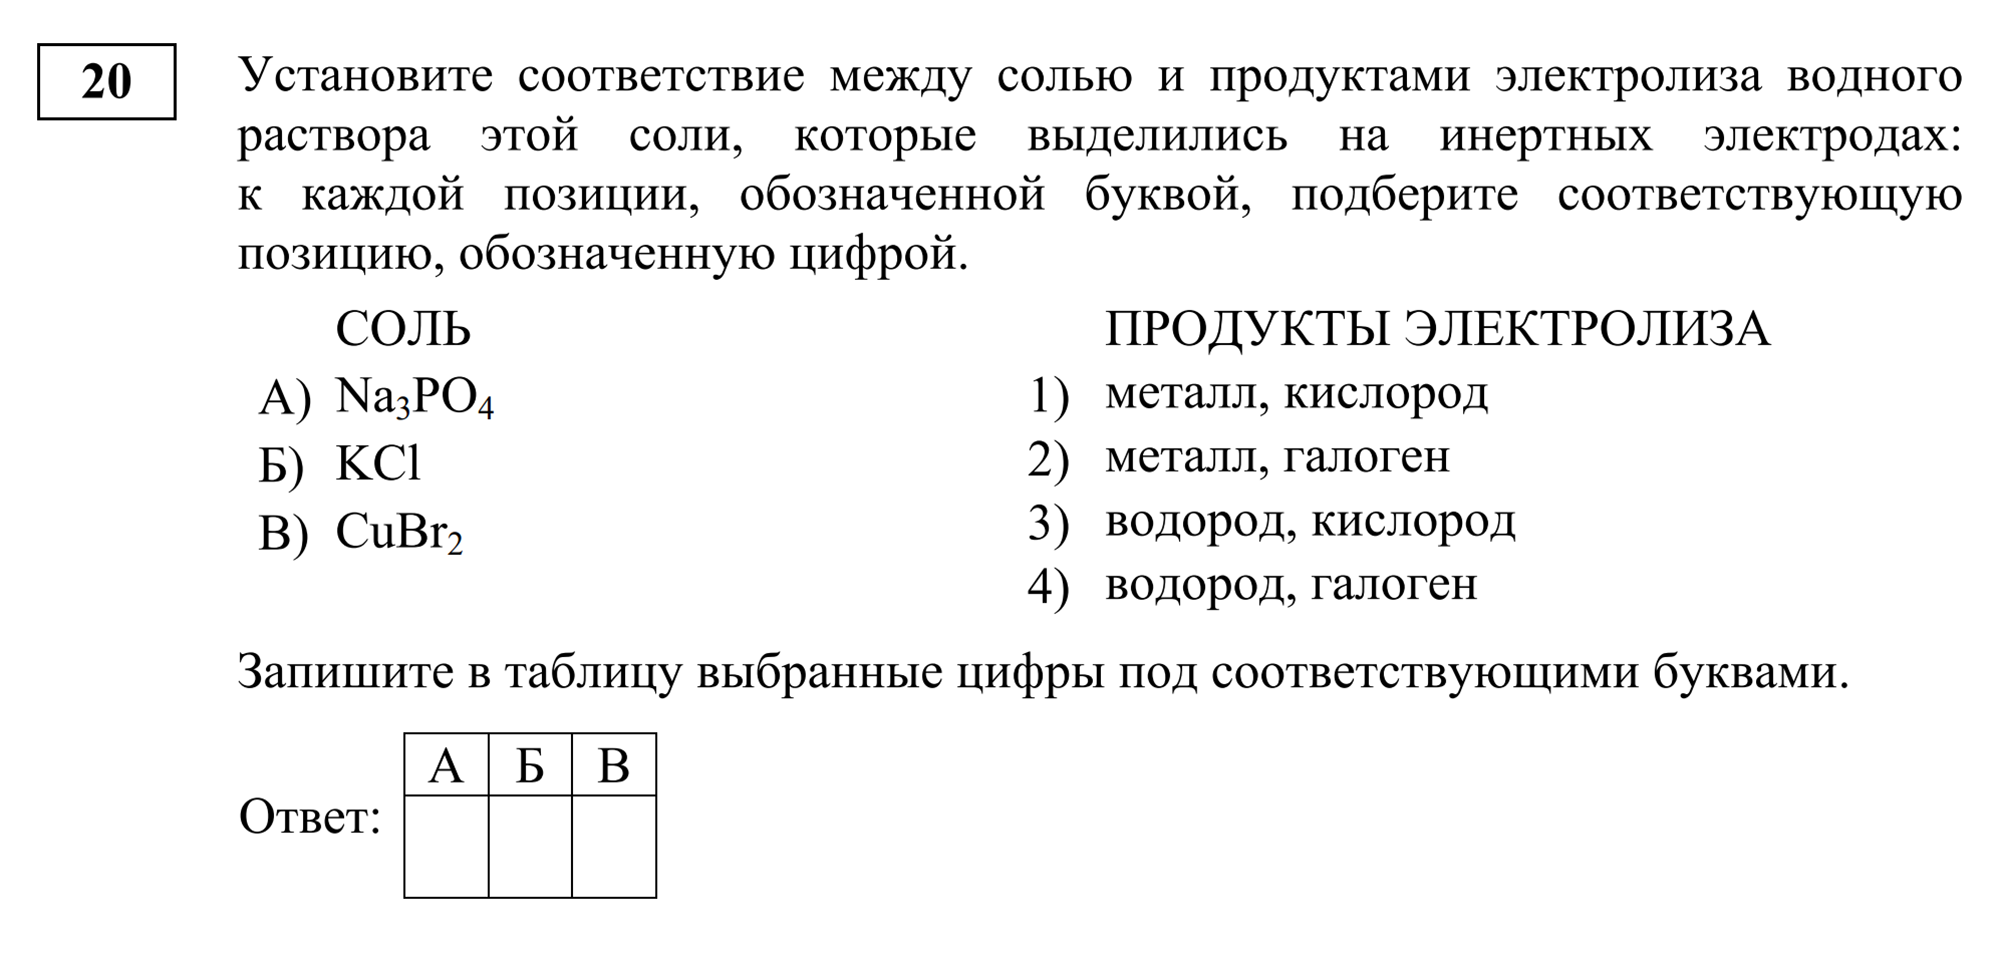 Задание из первой части на соотнесение связанных позиций из разных столбцов. Источник: fipi.ru